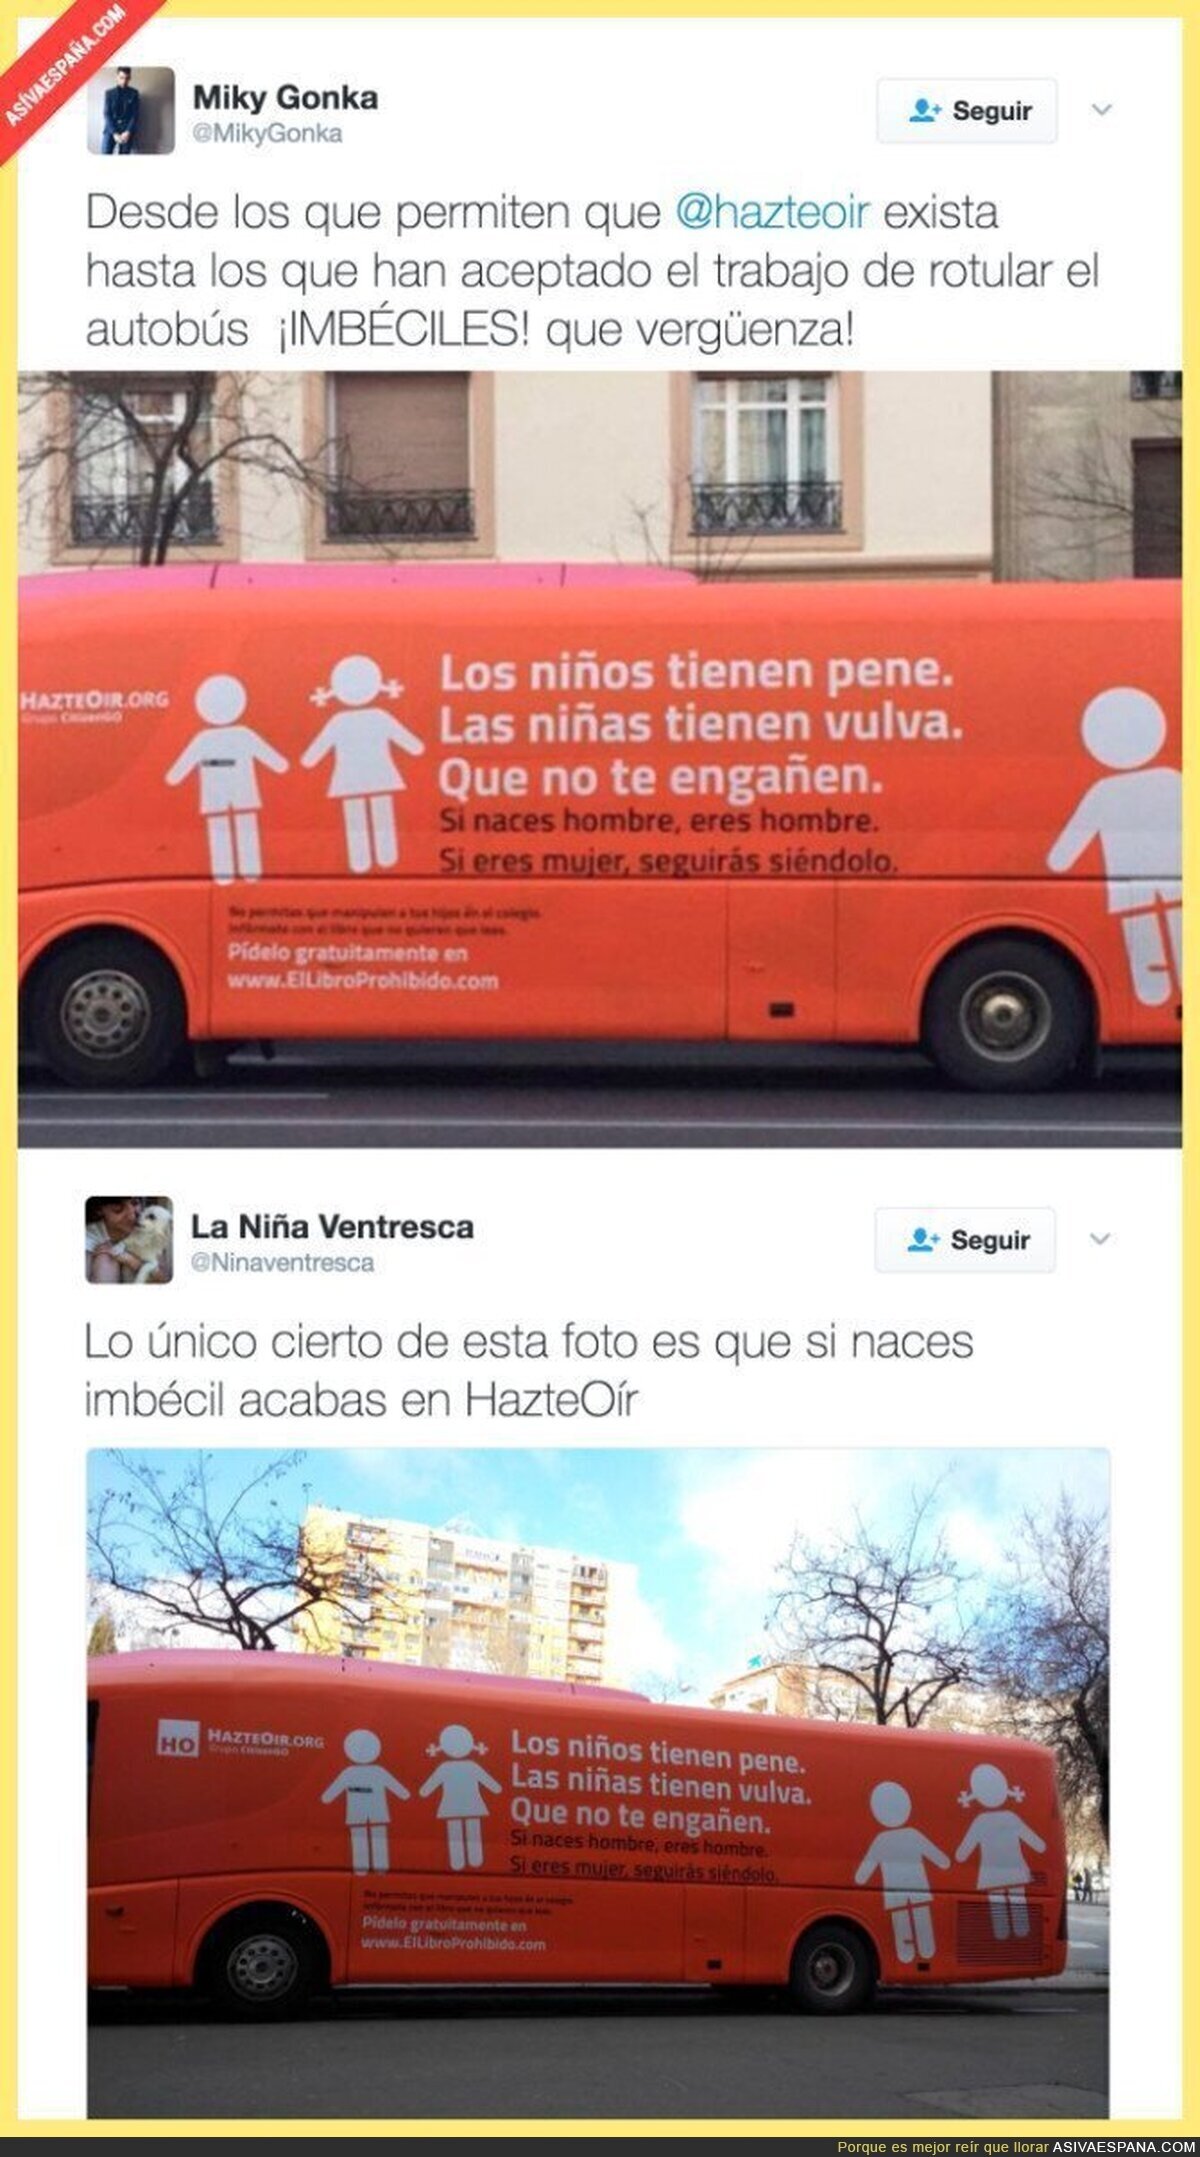 El polémico autobús rotulado por los ultras de HazteOír que incita a la transfobia